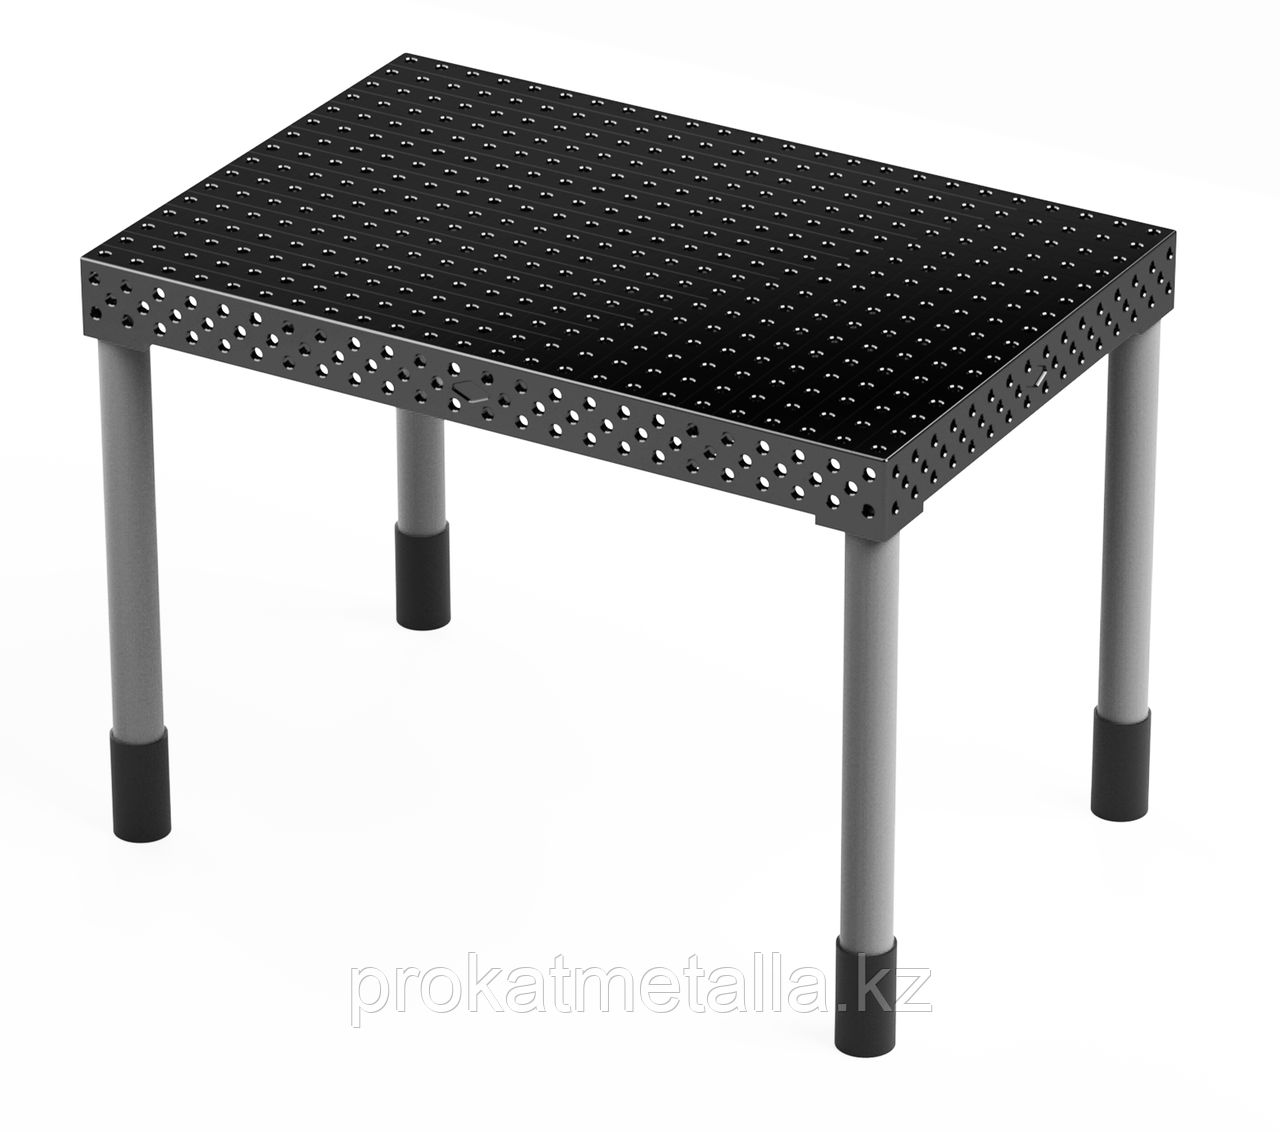 Сварочный стол "Стандарт" 2000х1000х150 (шаг 100 мм)